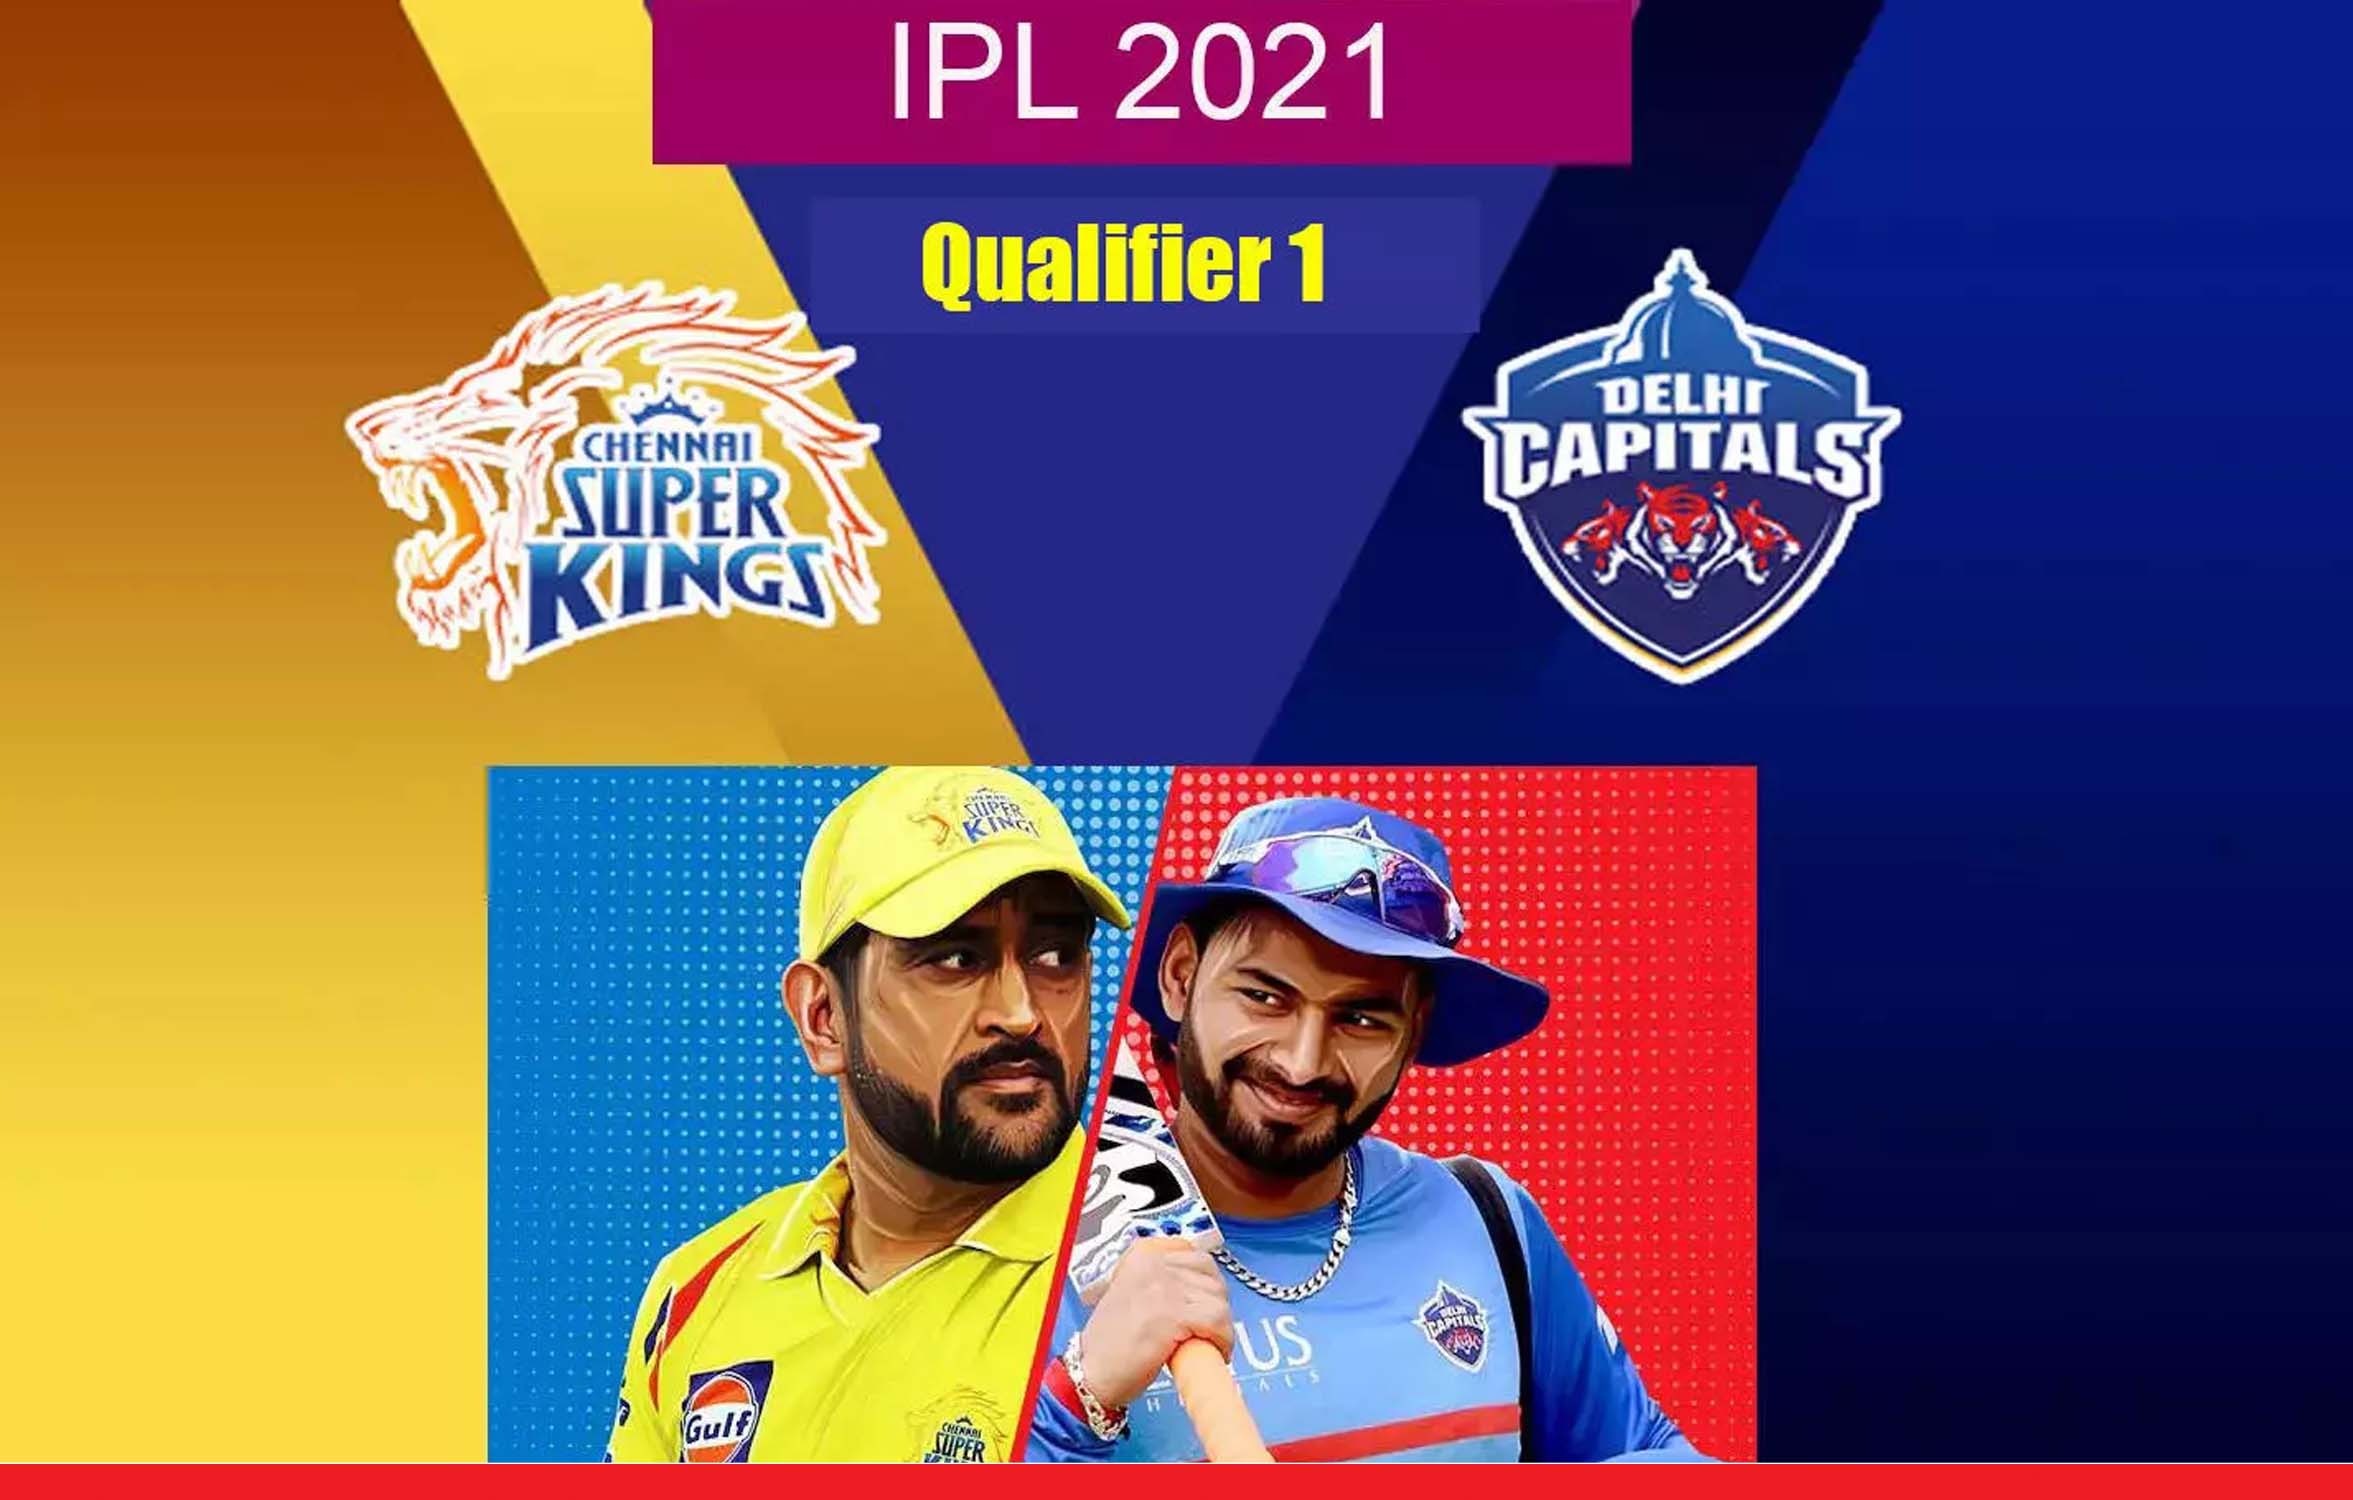 आज चेन्‍नई सुपर किंग्‍स बनाम दिल्‍ली कैपिटल्‍स के बीच IPL 2021 का पहला क्‍वालिफायर मैच